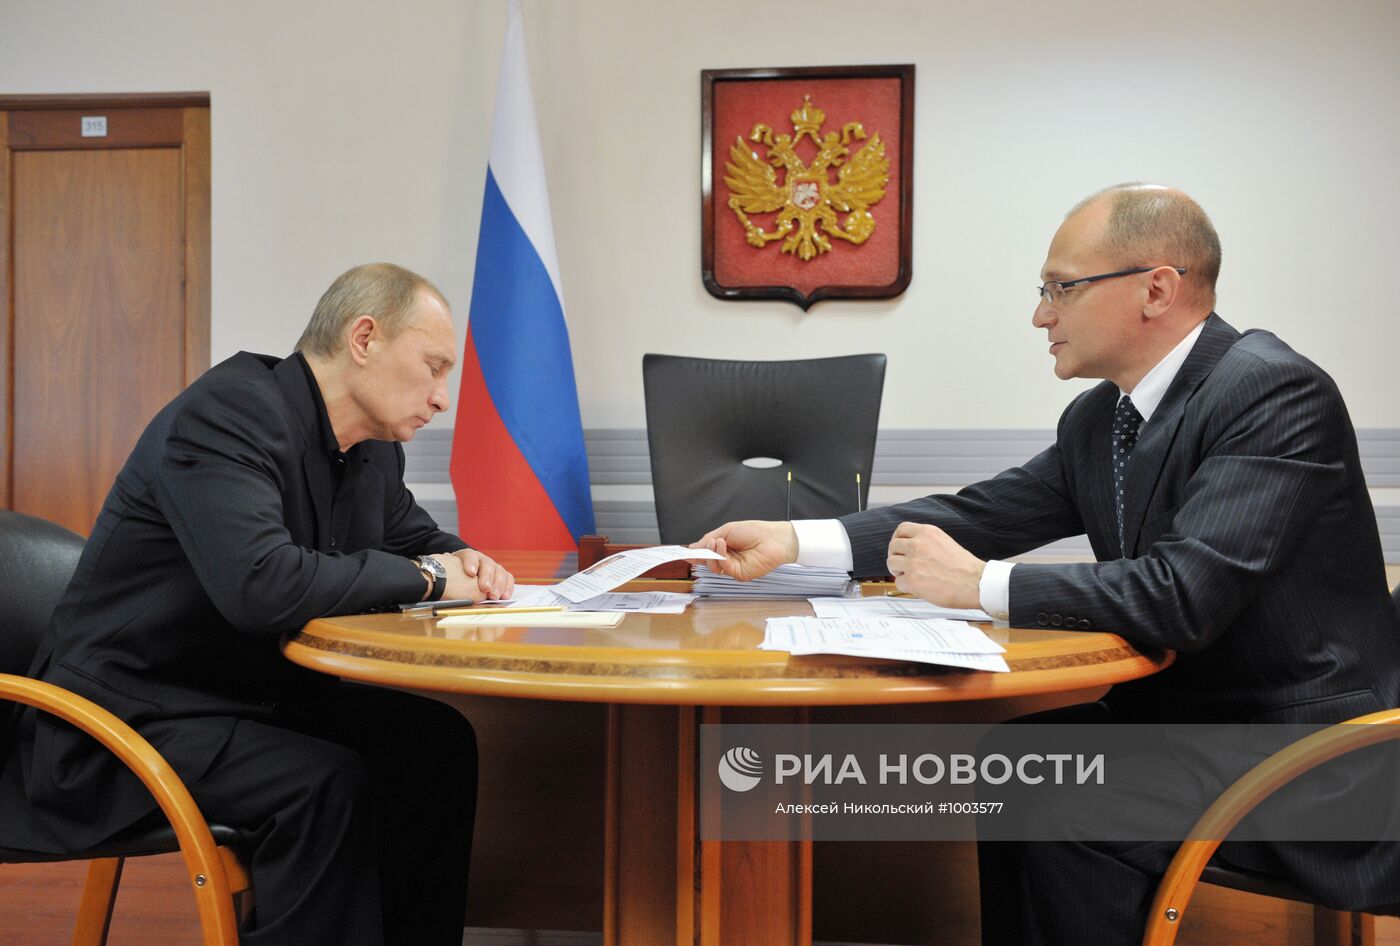 Рабочая поездка В.Путина в Центральный федеральный округ